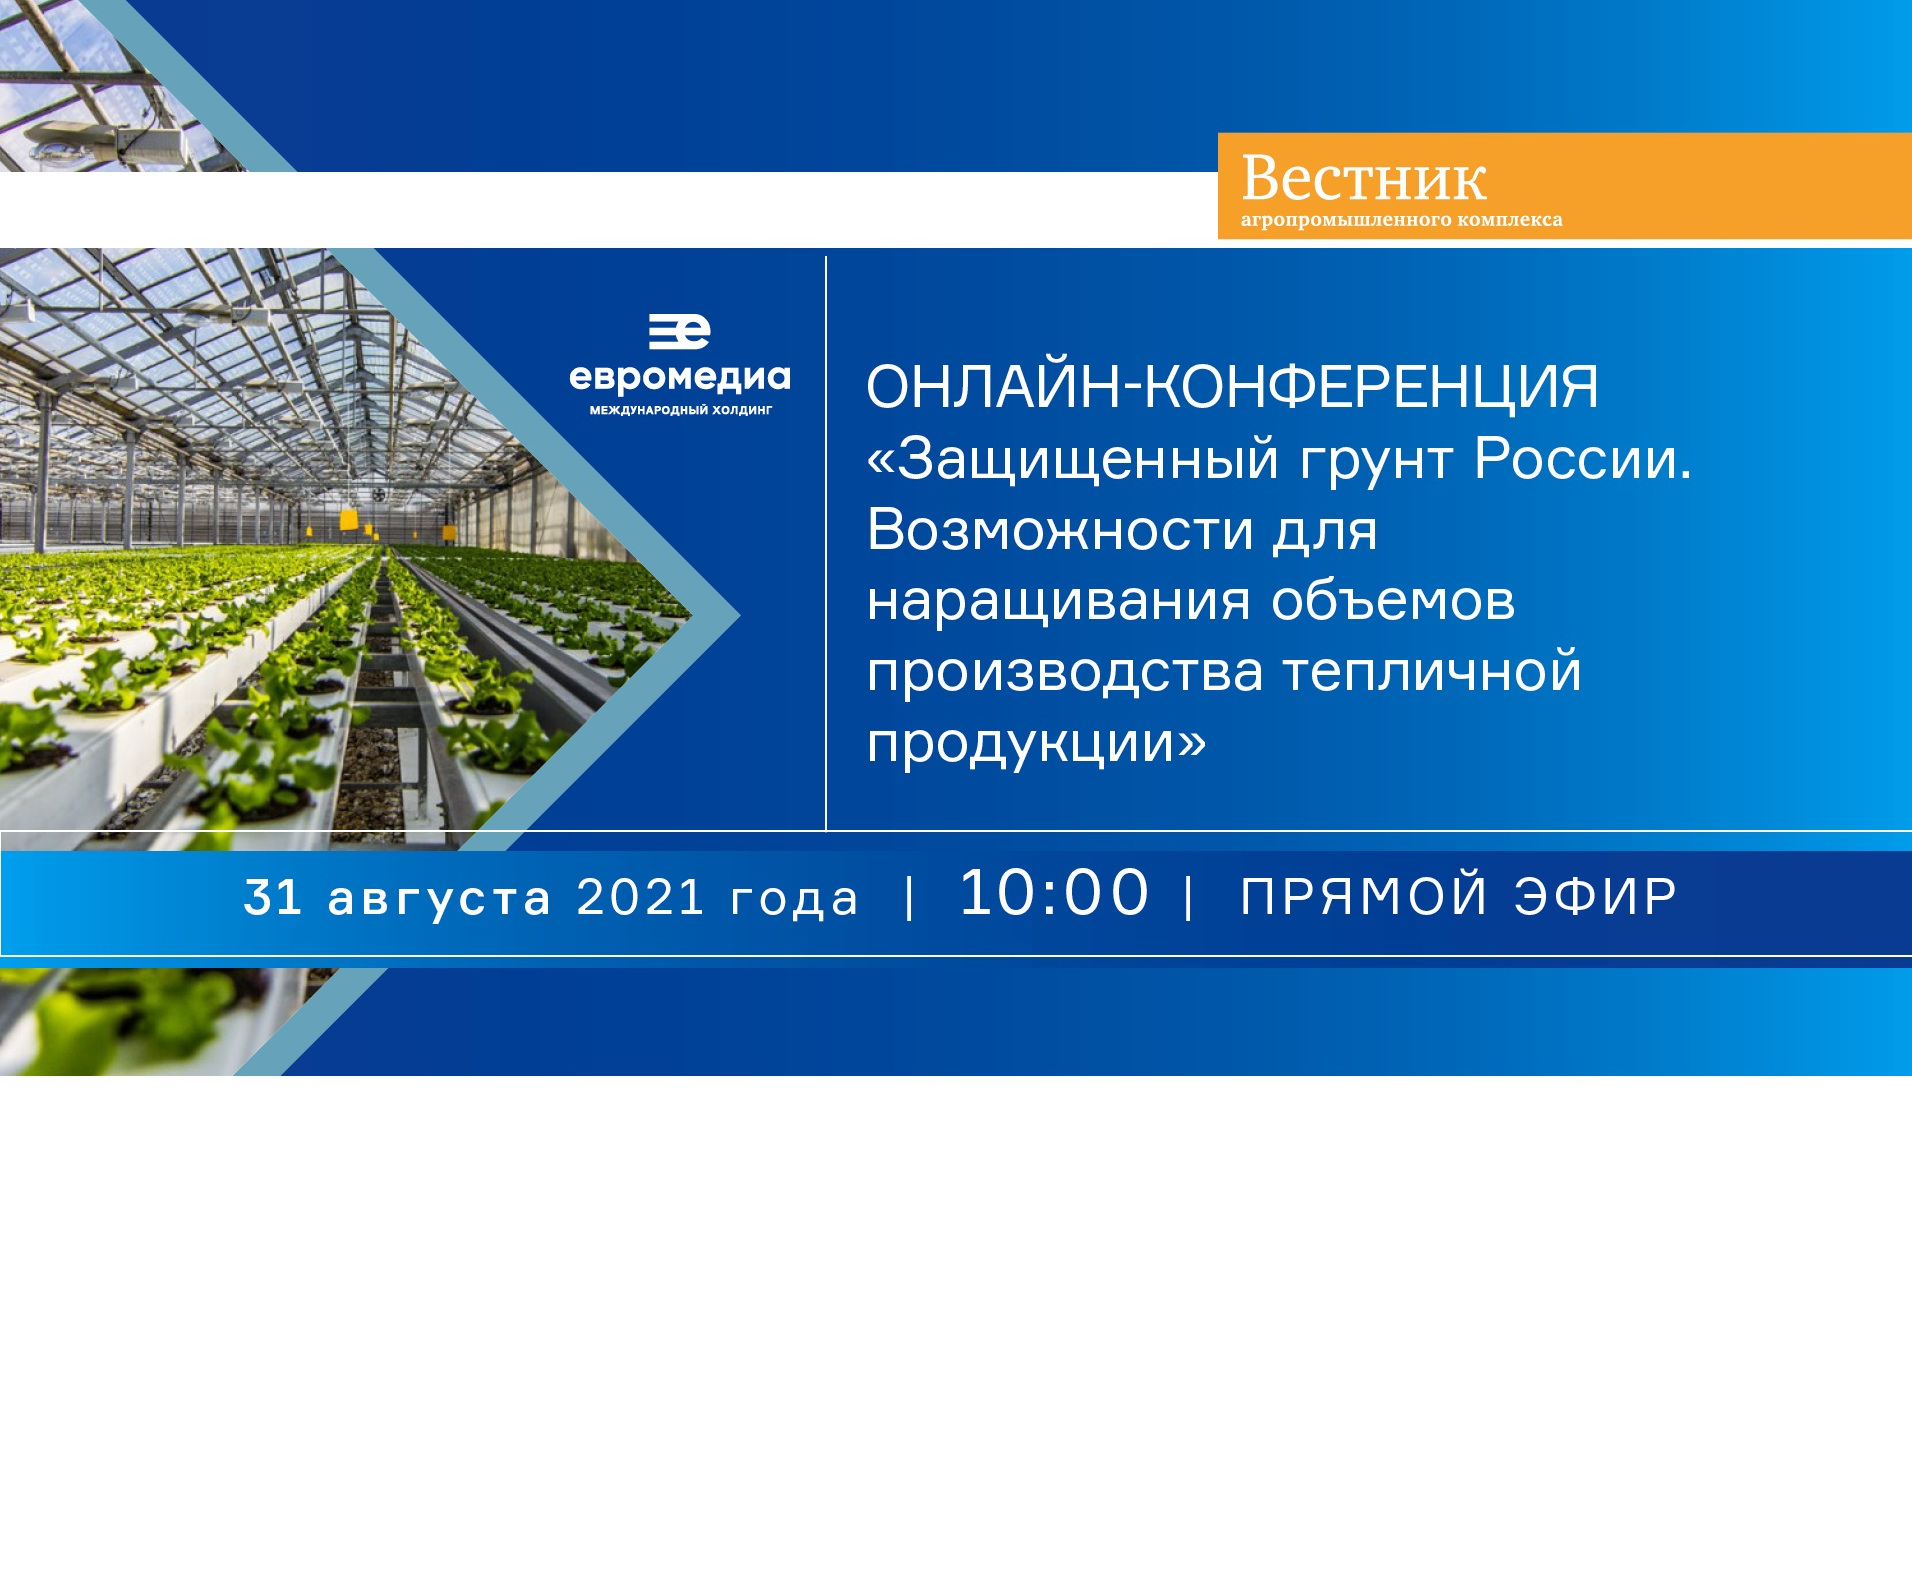 Международный холдинг «ЕвроМедиа» проведет онлайн-конференцию, посвященную перспективам развития тепличной отрасли в России